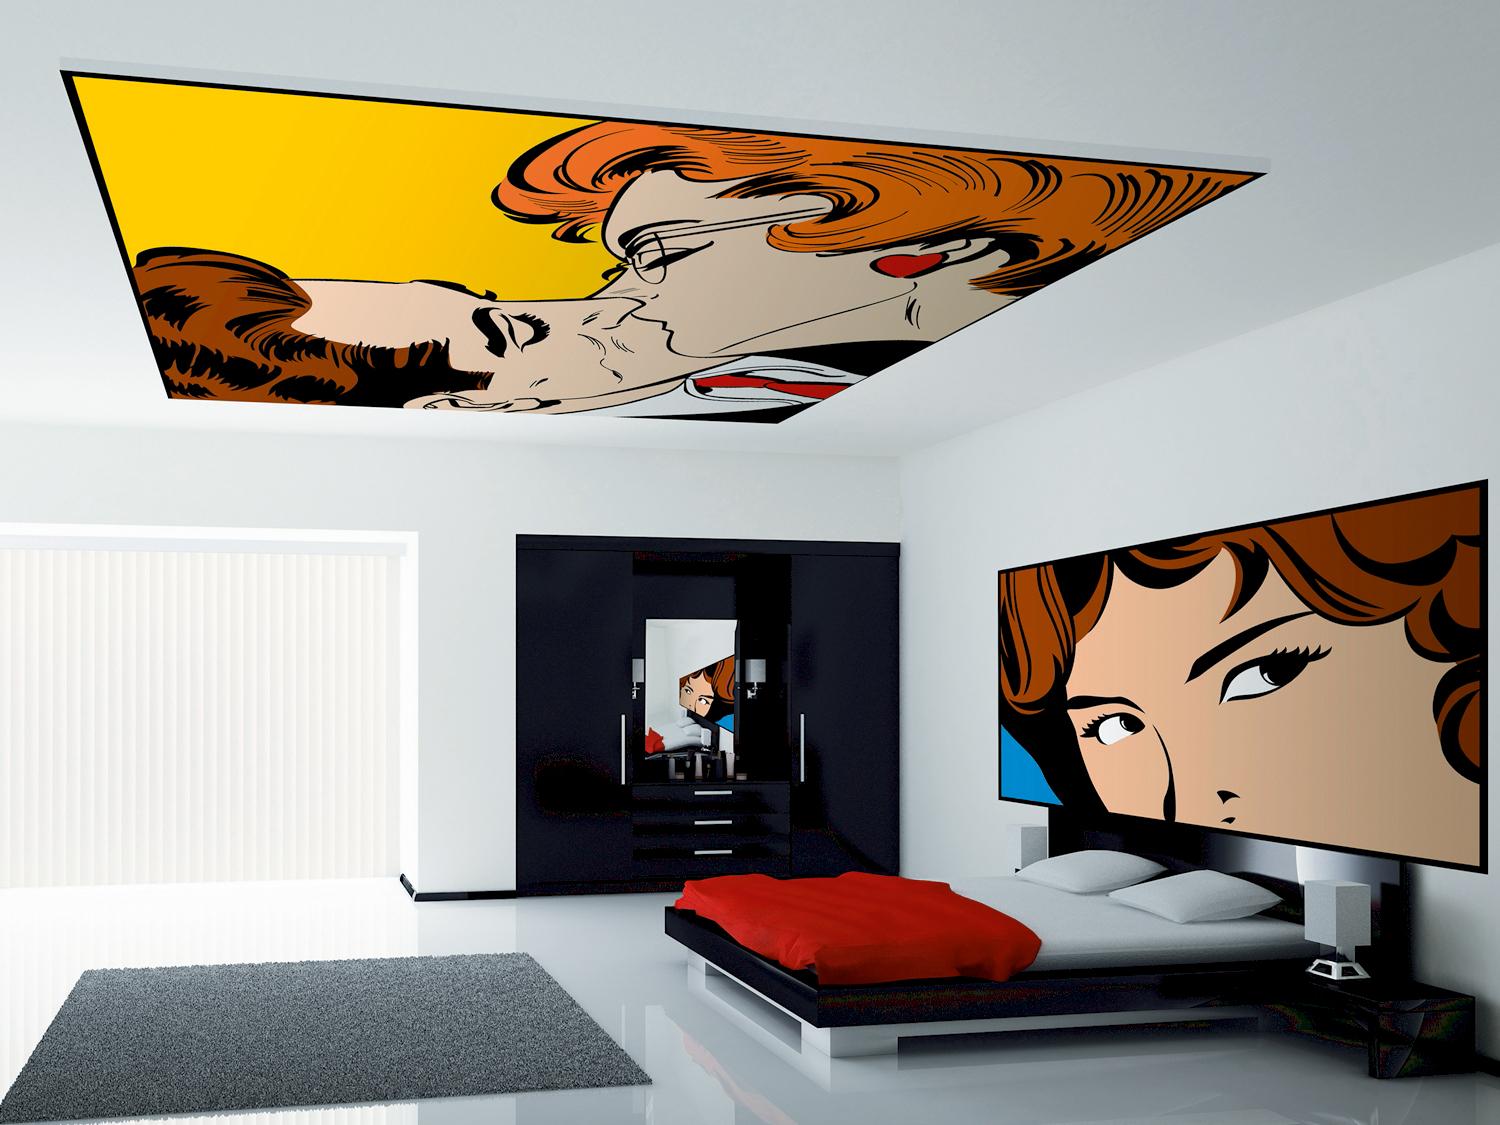 Wand und Deckenbild im Schlafzimmer #hotelzimmer #deckenbild ©frescovision.de / K. Miroschnik